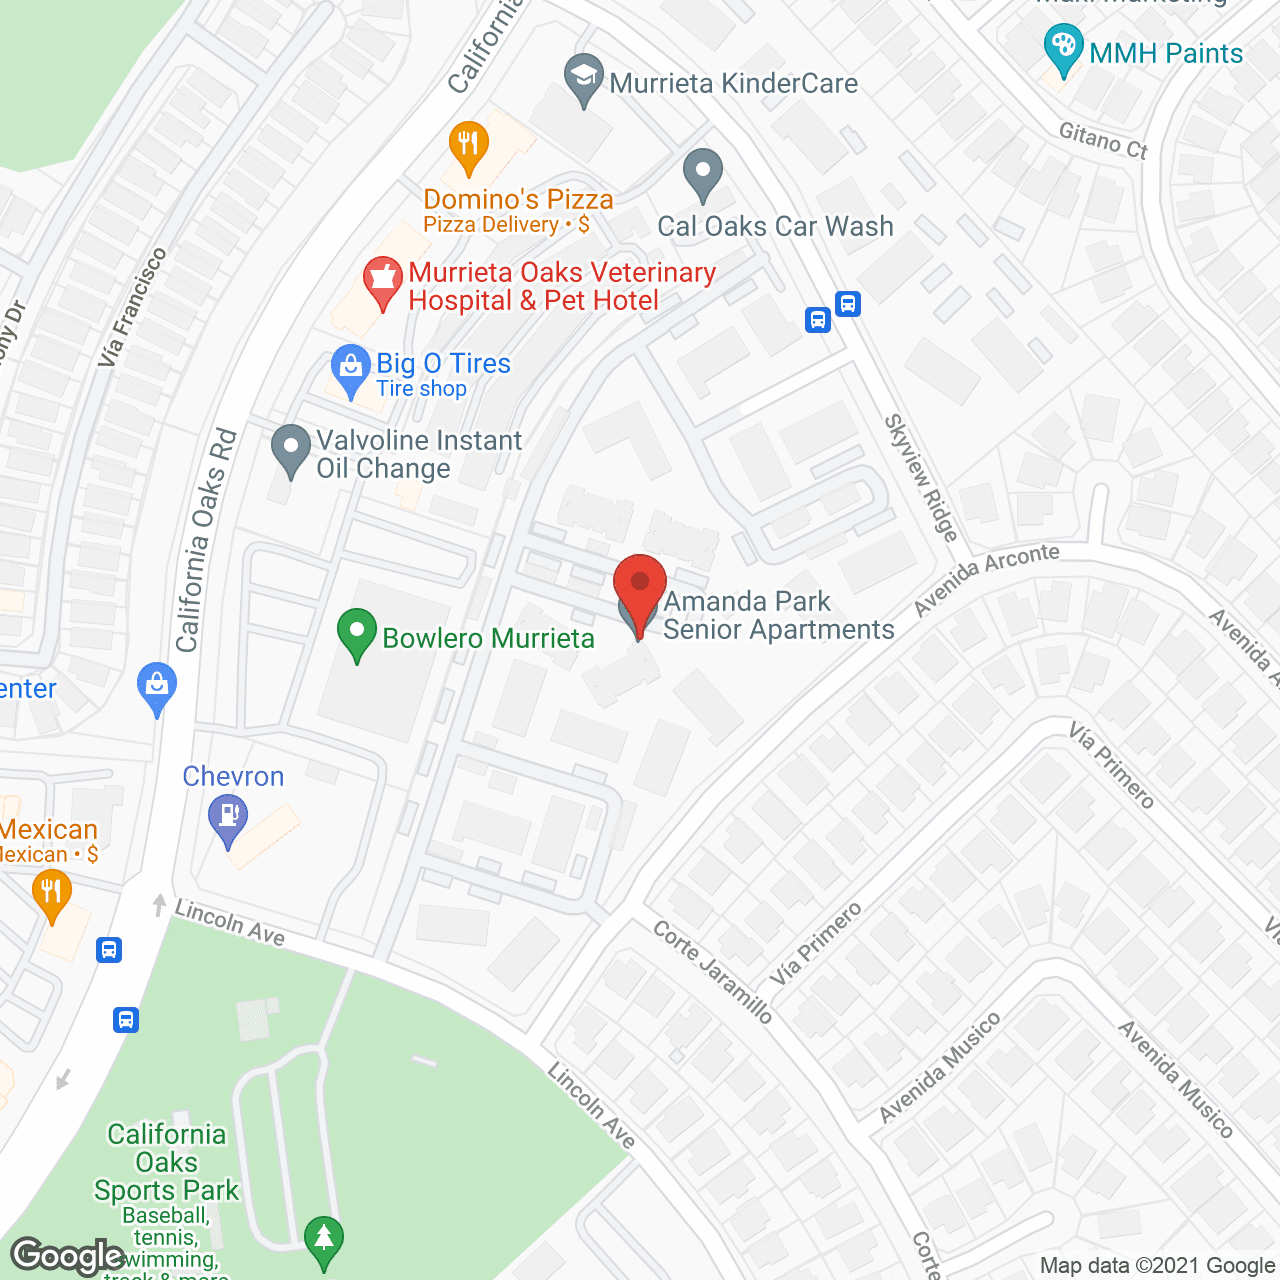 Amanda Park in google map